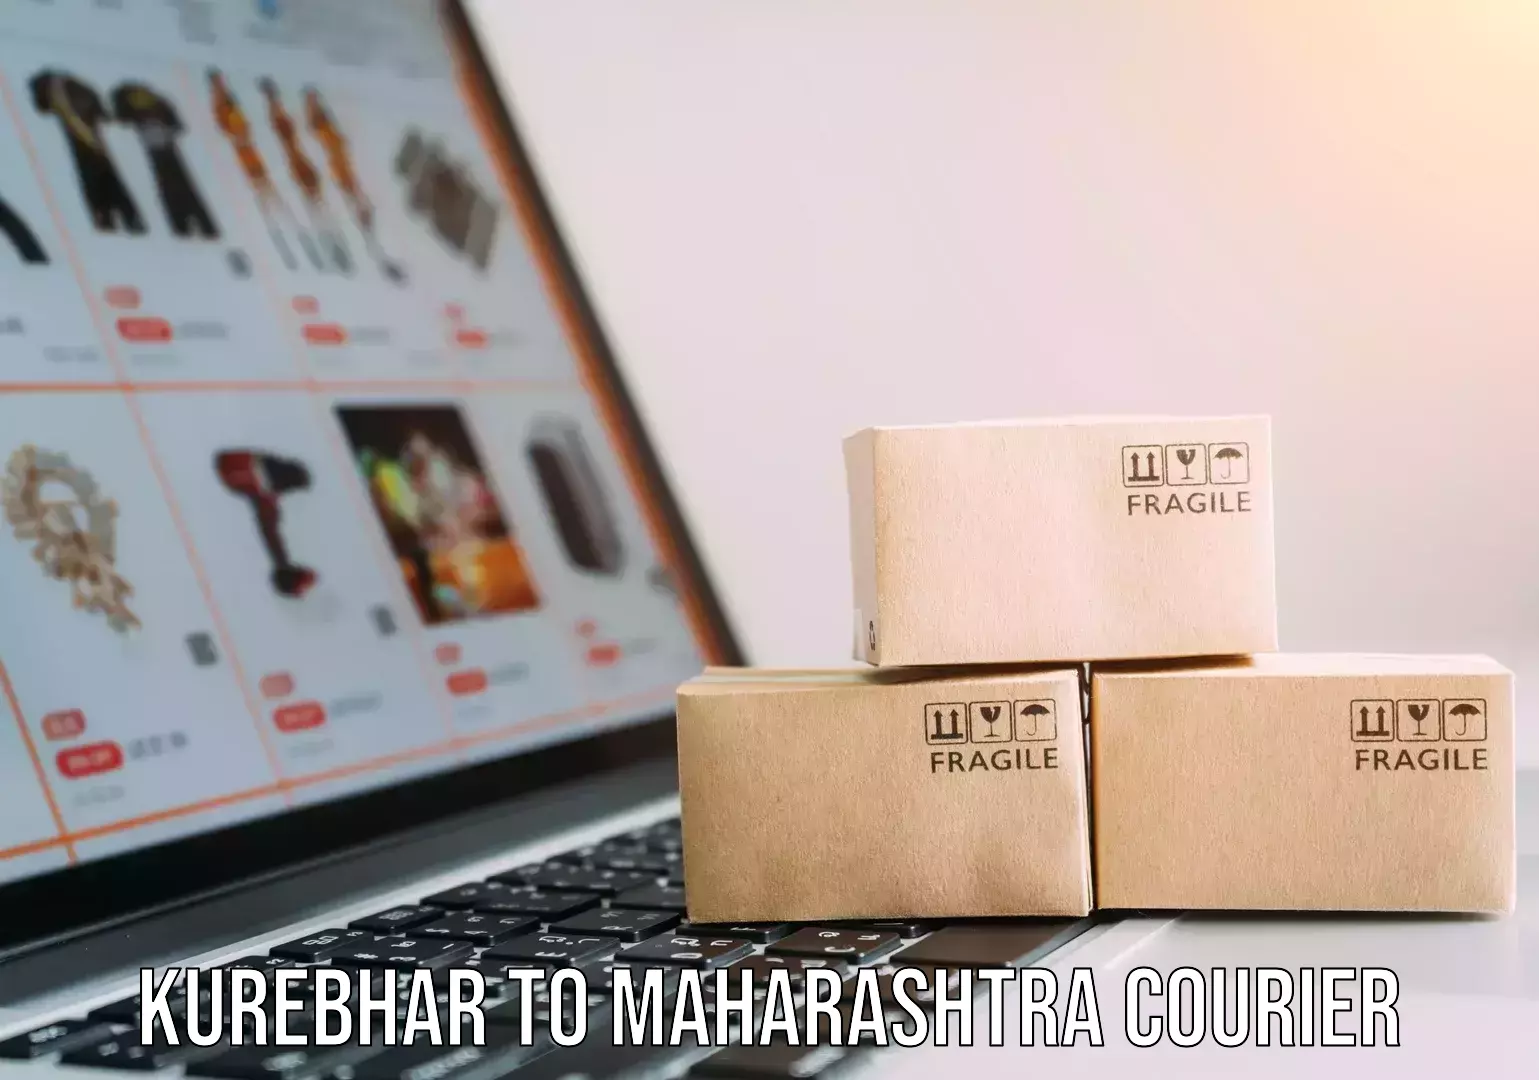 Home goods moving company Kurebhar to Maharashtra